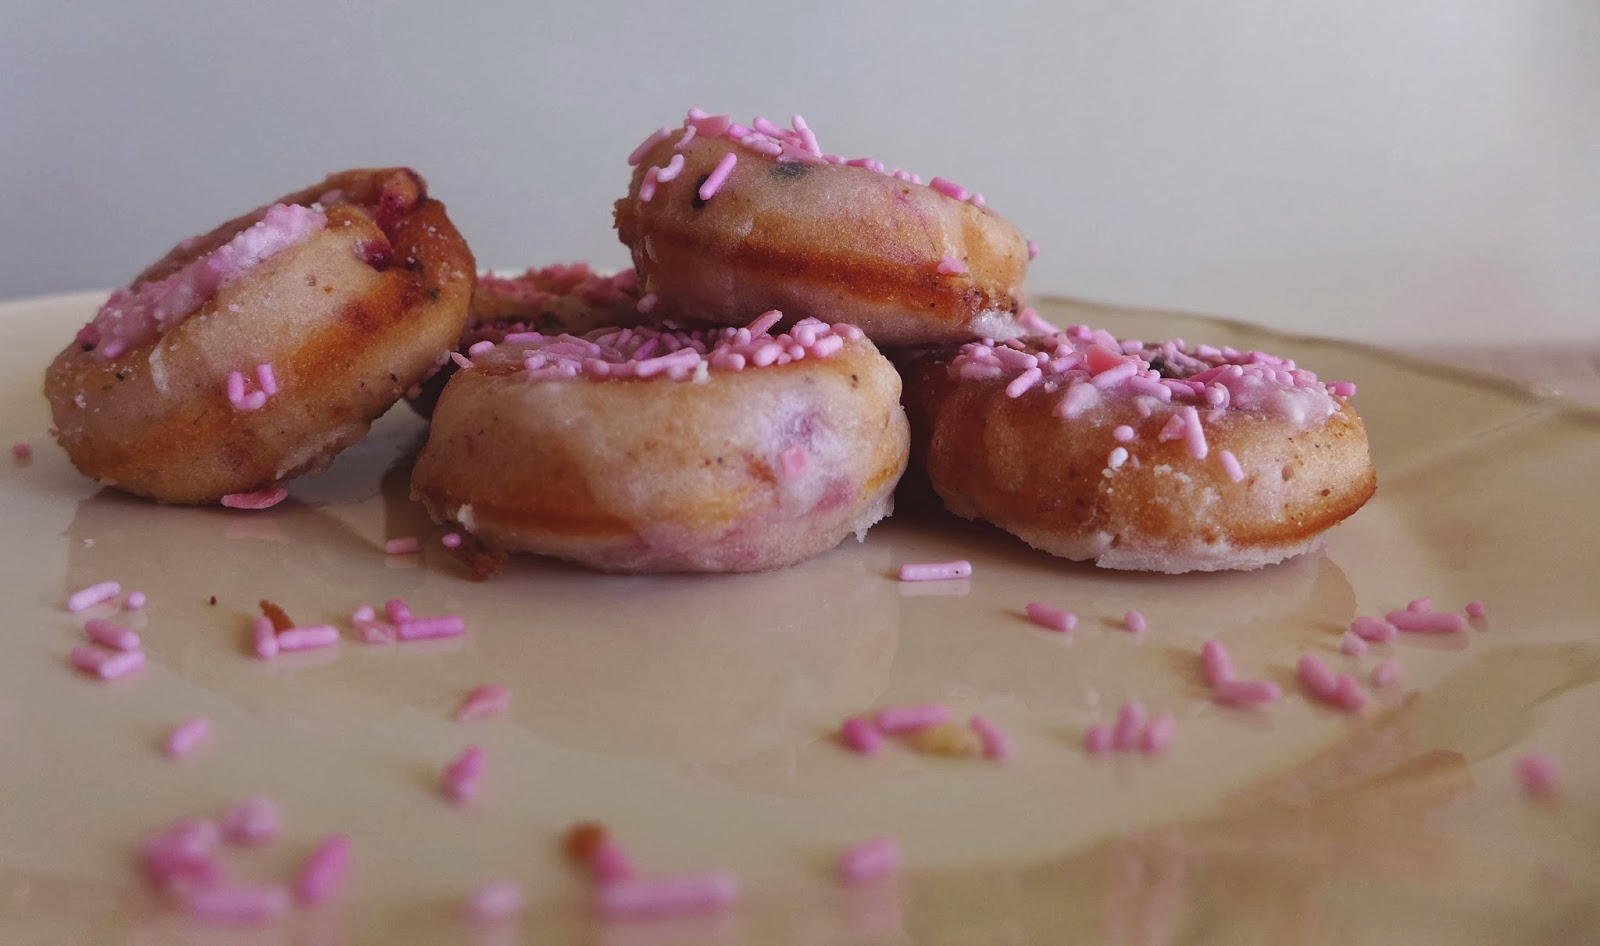 Mini donuts de iogurte e frutos vermelhos/ Mini yogurt and berry donuts